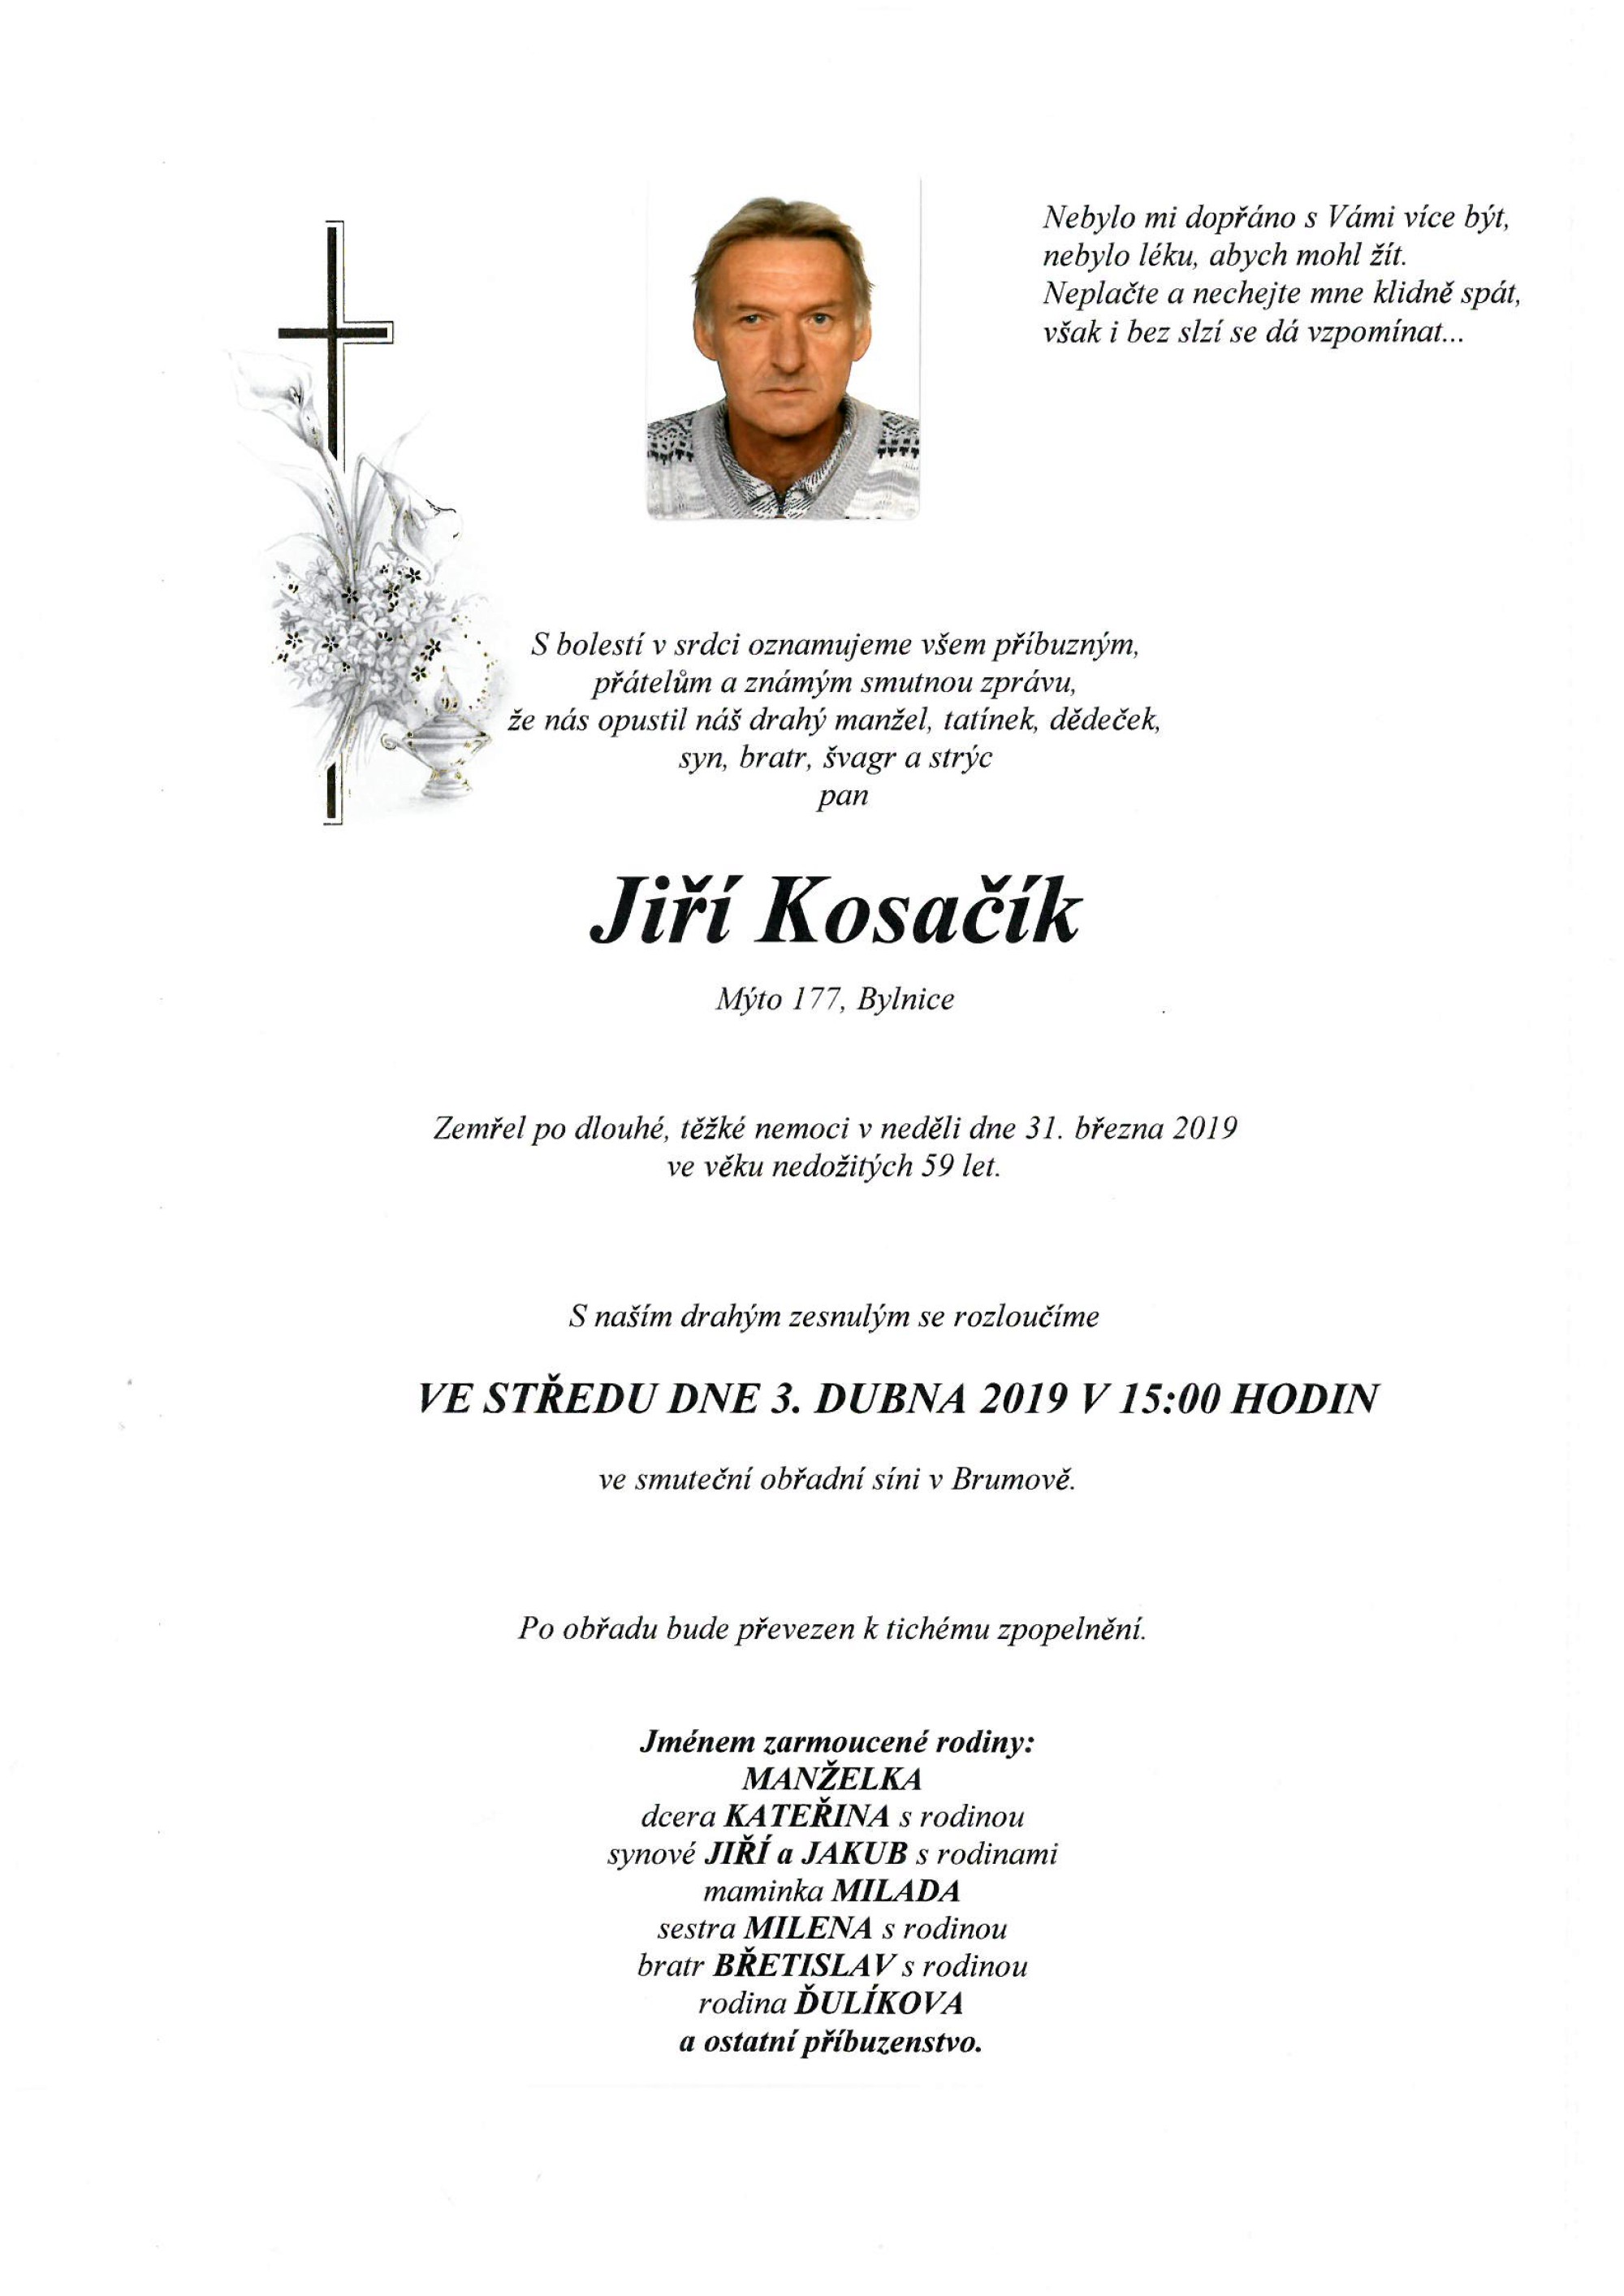 Jiří Kosačík